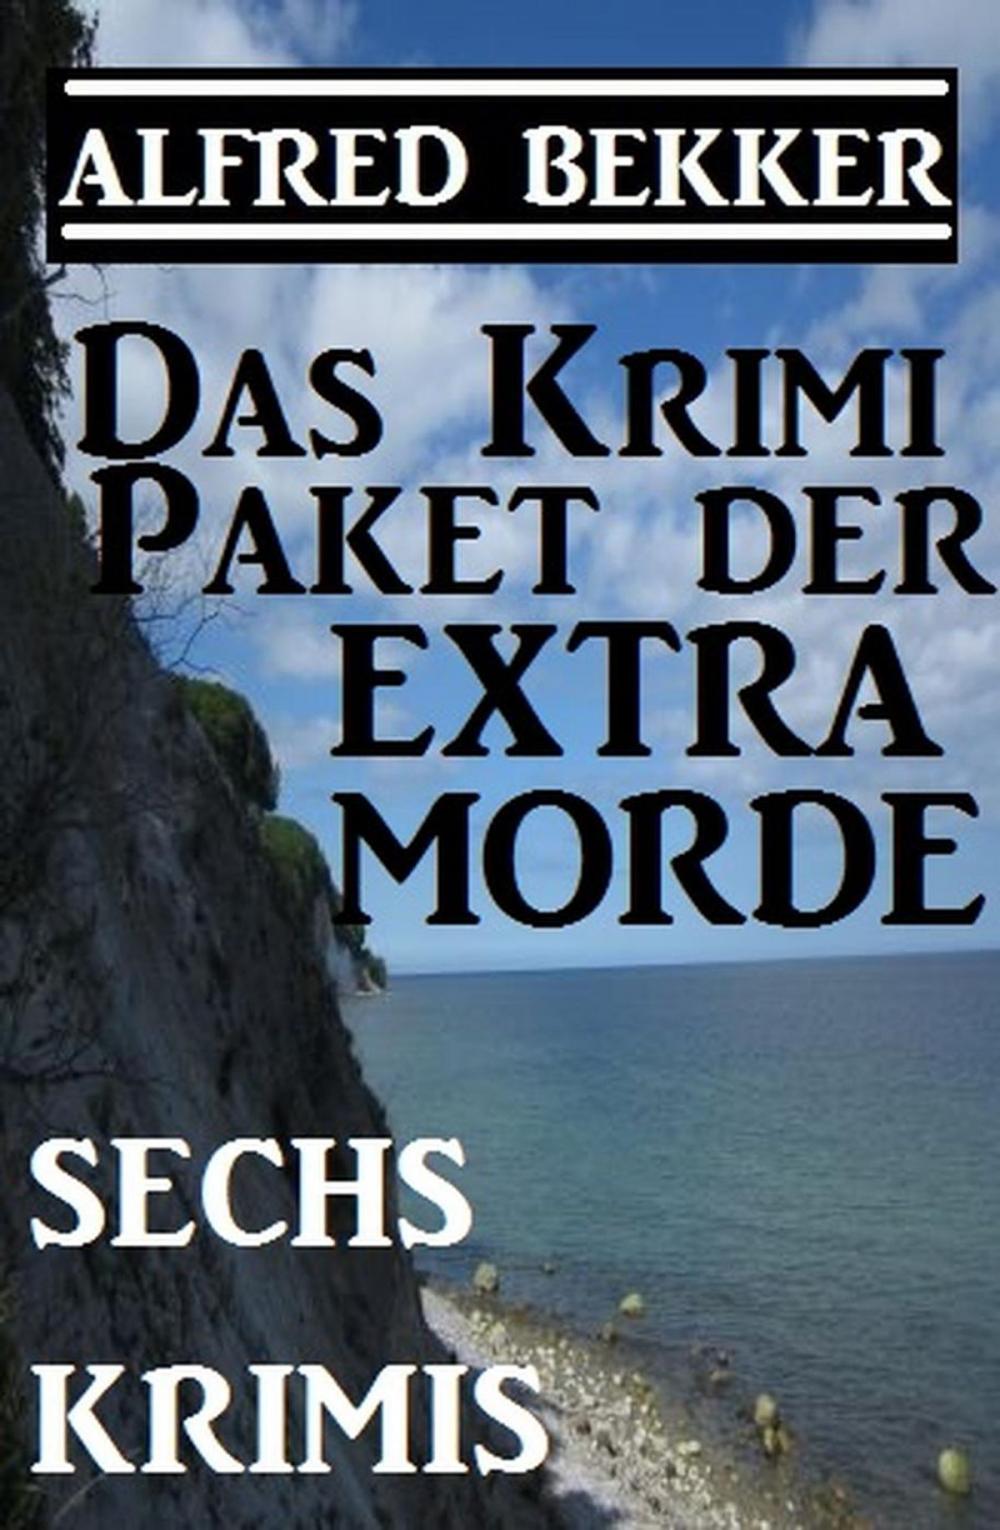 Big bigCover of Sechs Alfred Bekker Krimis - Das Krimi-Paket der Extra-Morde